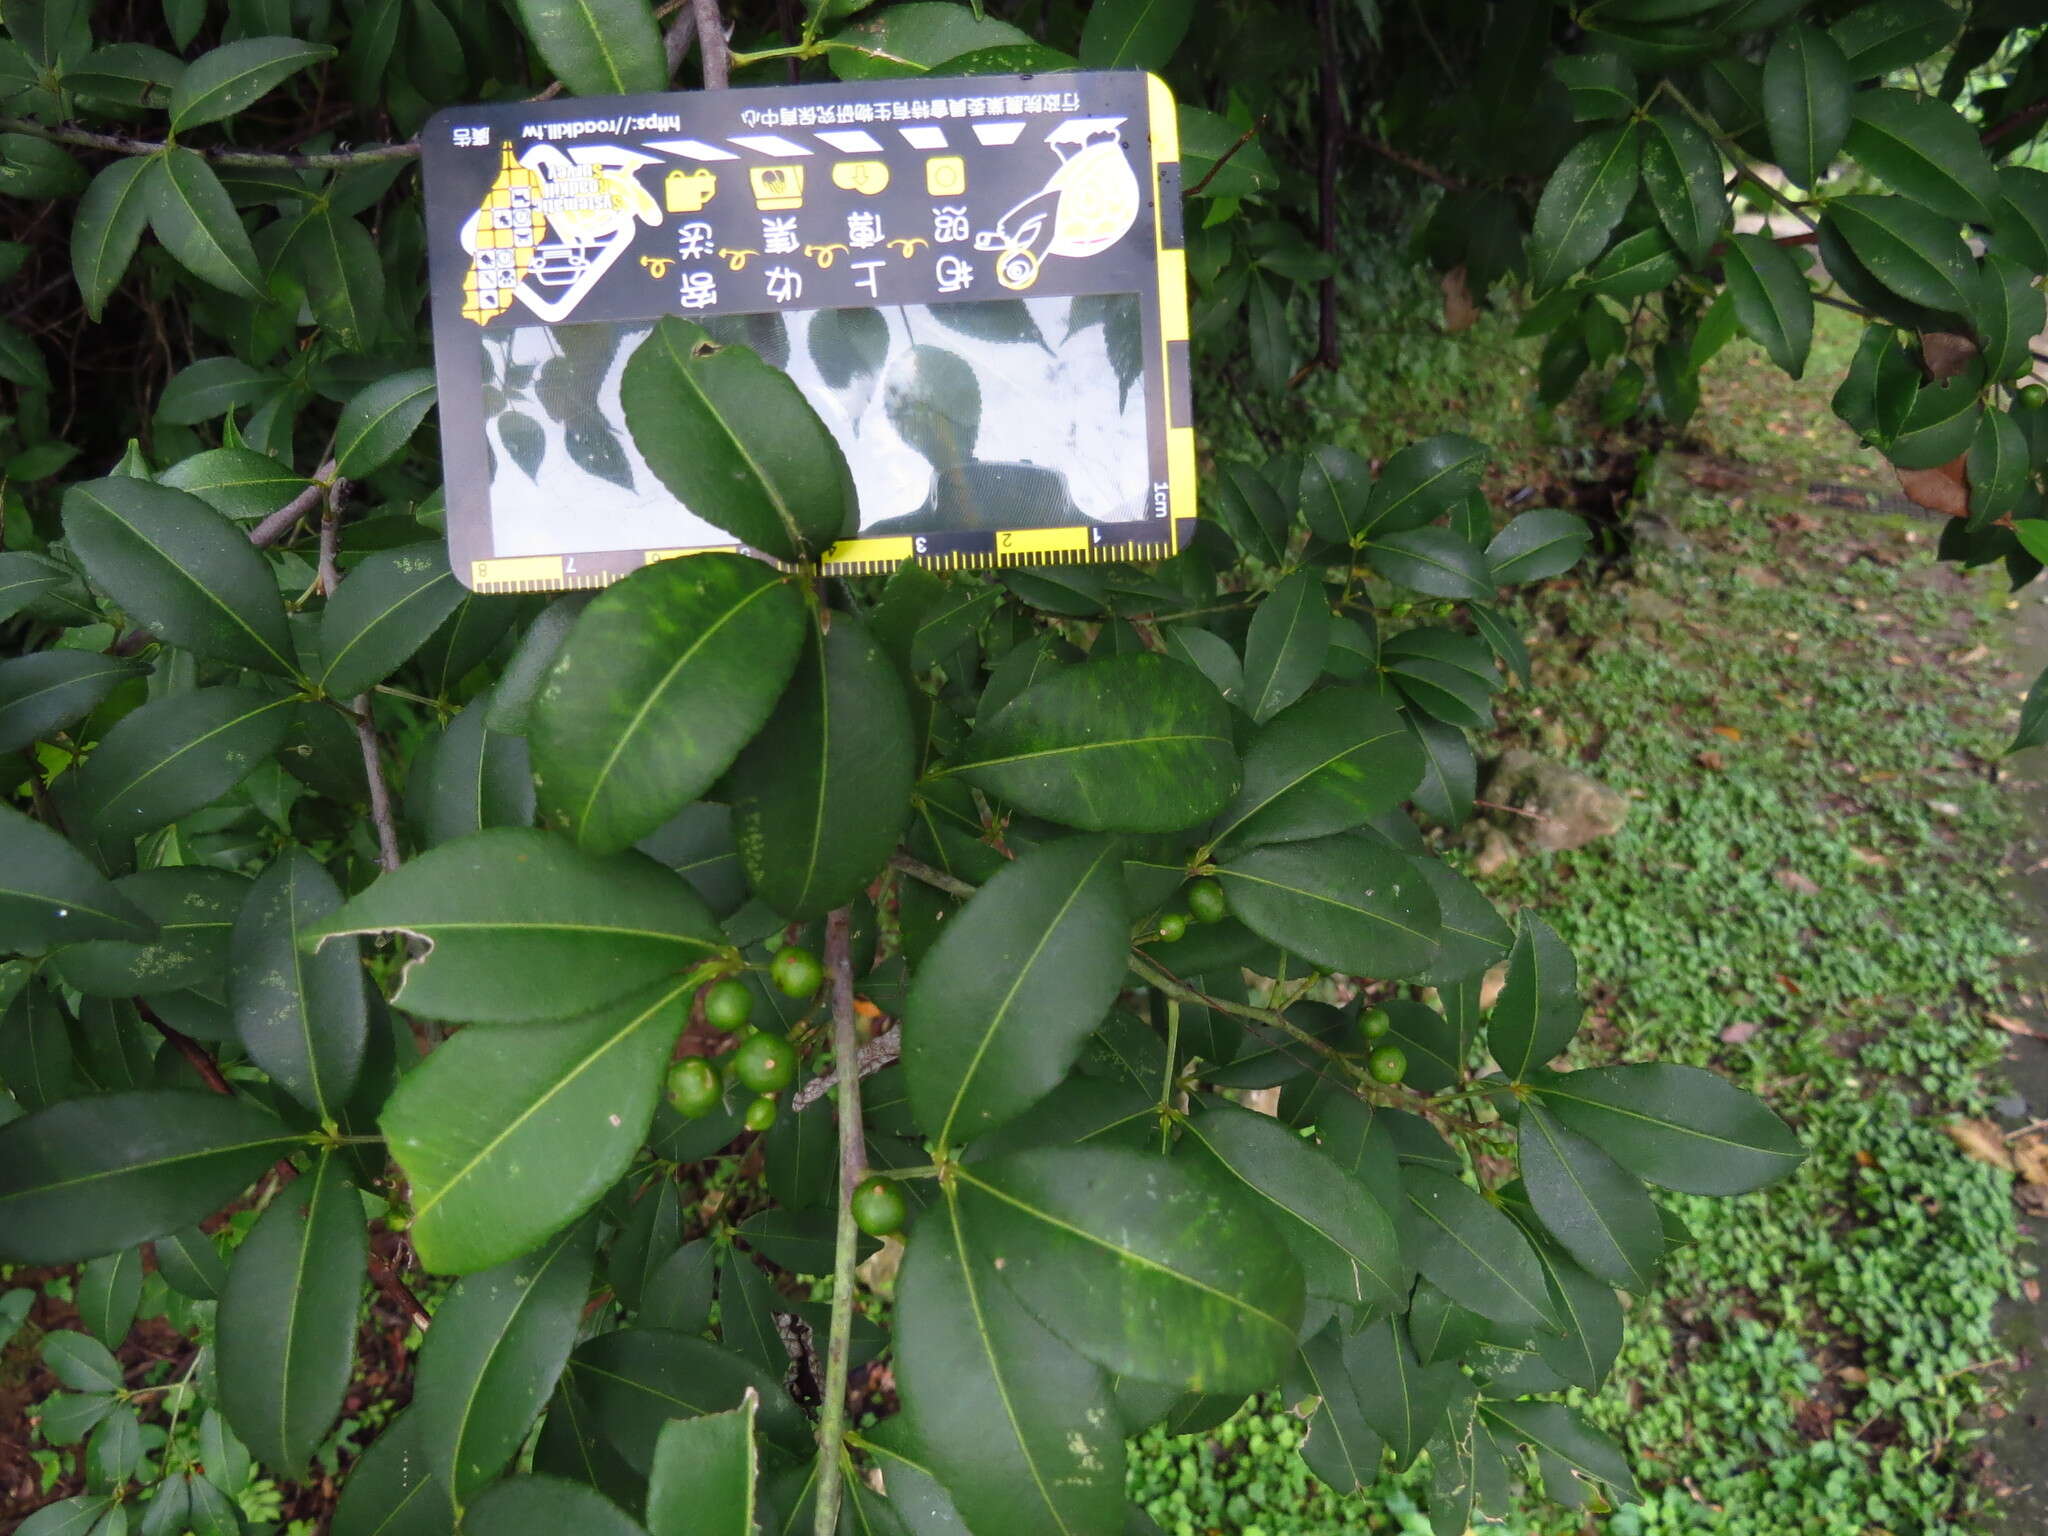 Image of Zanthoxylum asiaticum